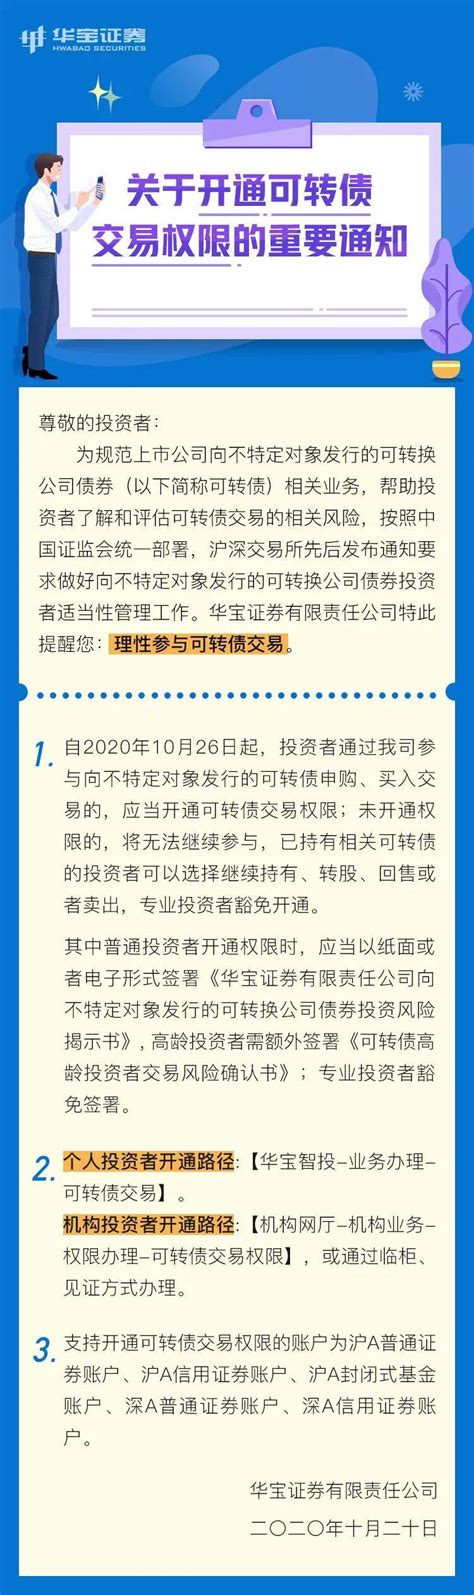 关于开通可转债交易权限的重要通知-搜狐大视野-搜狐新闻